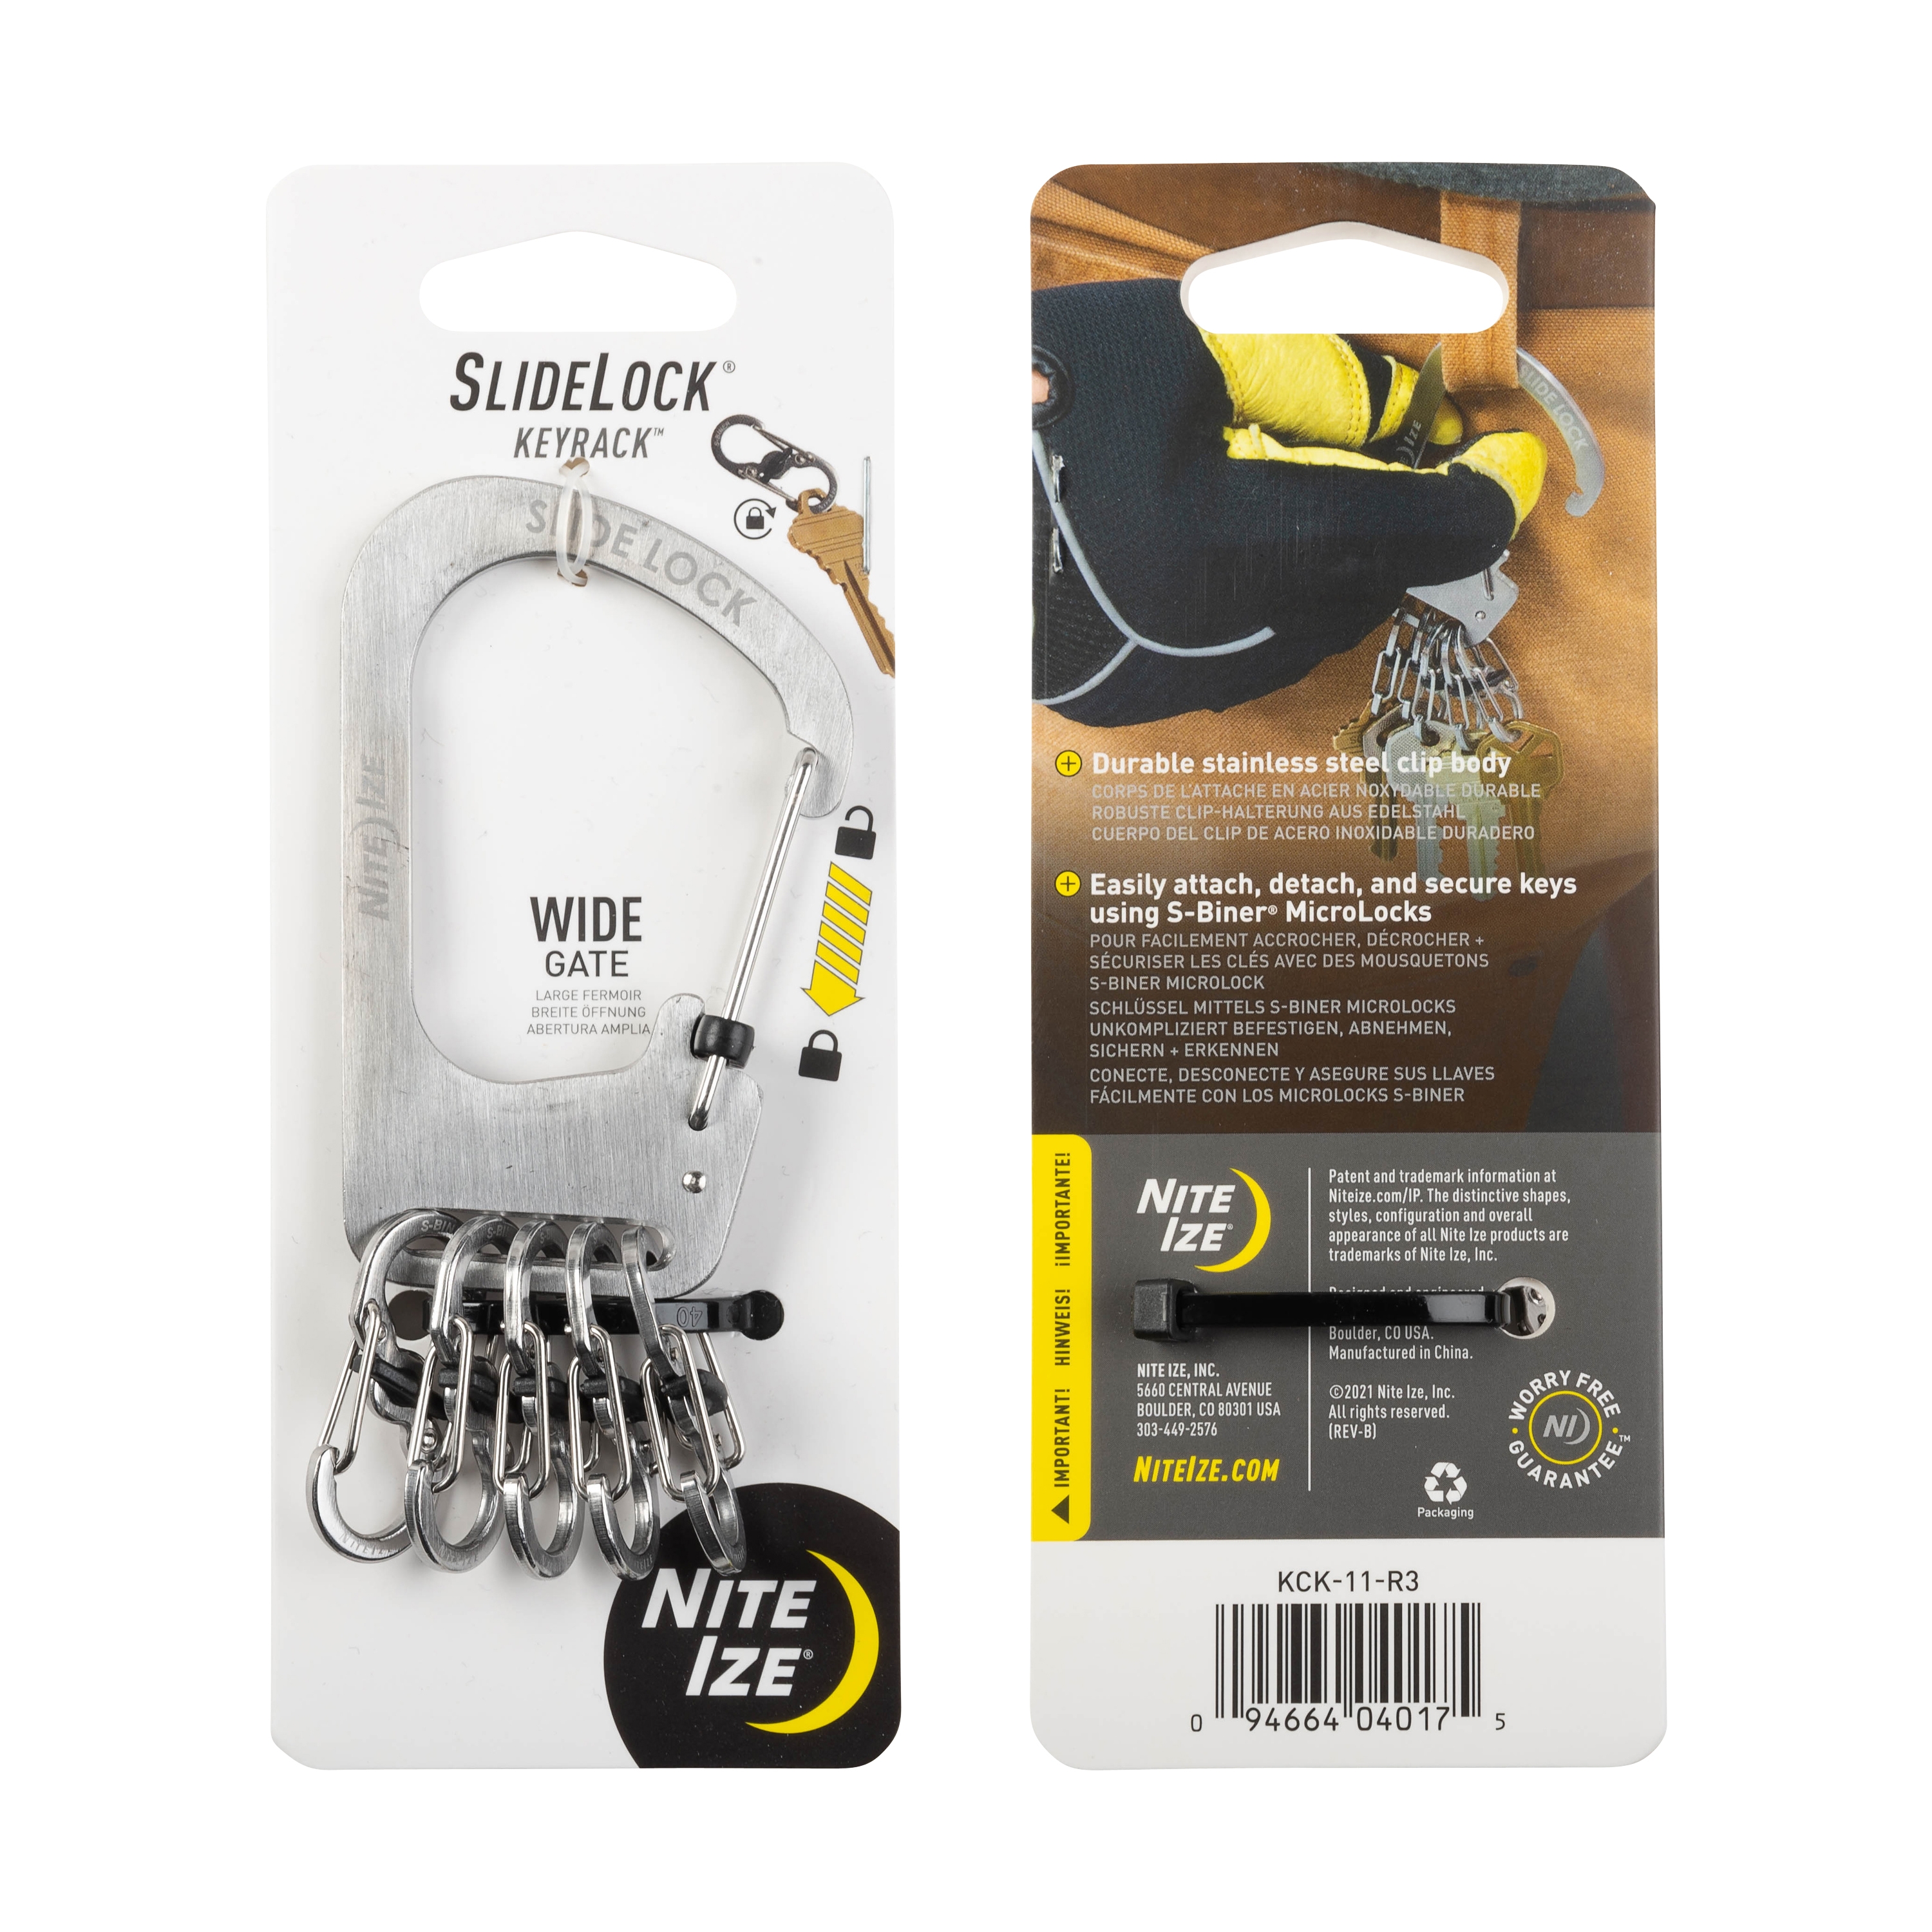 J162 Nite Ize Kck-11-r3 SlideLock KEYRACK for sale online 